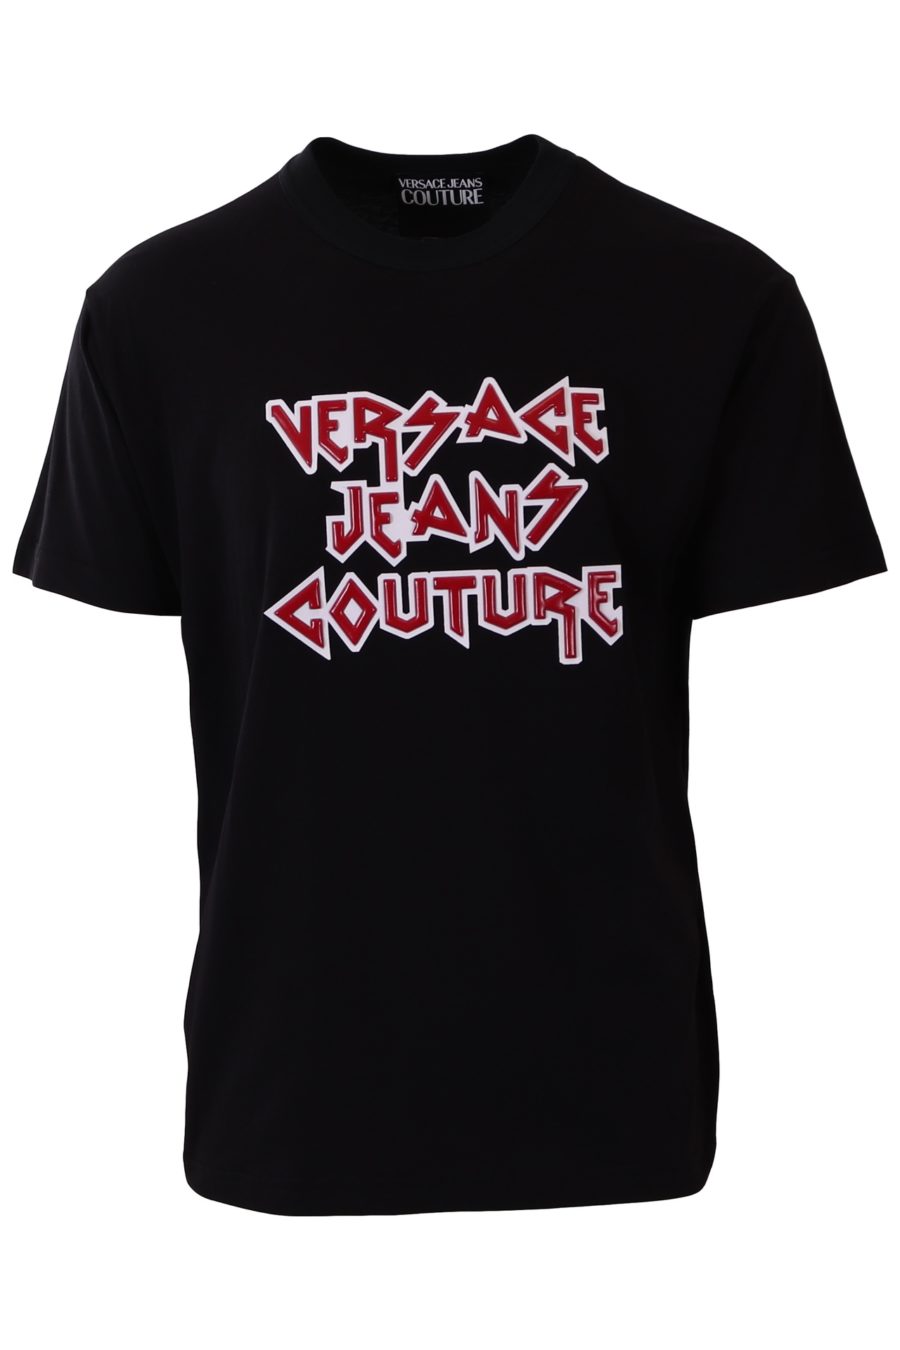 T-shirt Versace Jeans Couture black rock - 58615c5a487451b6c88a93476c20d04f37c73b8d